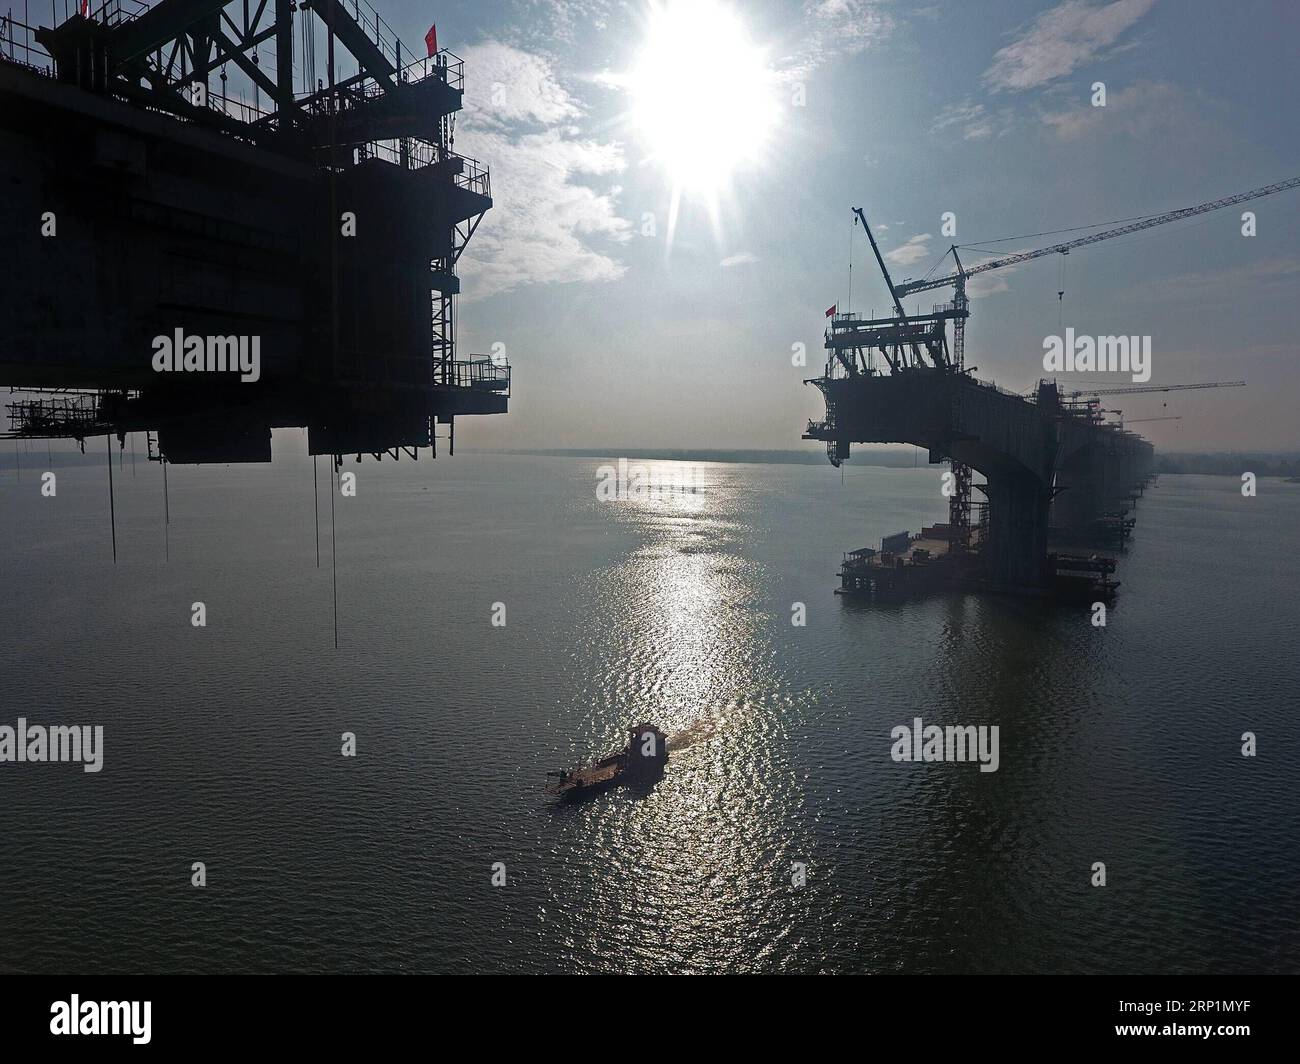 (180715) -- XIANGYANG, 15 juillet 2018 -- une photo aérienne prise le 14 juillet 2018 montre le chantier de construction du pont sur la rivière Hanjiang du chemin de fer à grande vitesse Wuhan-Shiyan dans la ville de Xiangyang, dans la province du Hubei en Chine centrale. La ligne à grande vitesse sera mise en service en 2019. ) (Ry) CHINE-HUBEI-CONSTRUCTION FERROVIAIRE À GRANDE VITESSE (CN) XiexYong PUBLICATIONxNOTxINxCHN Banque D'Images